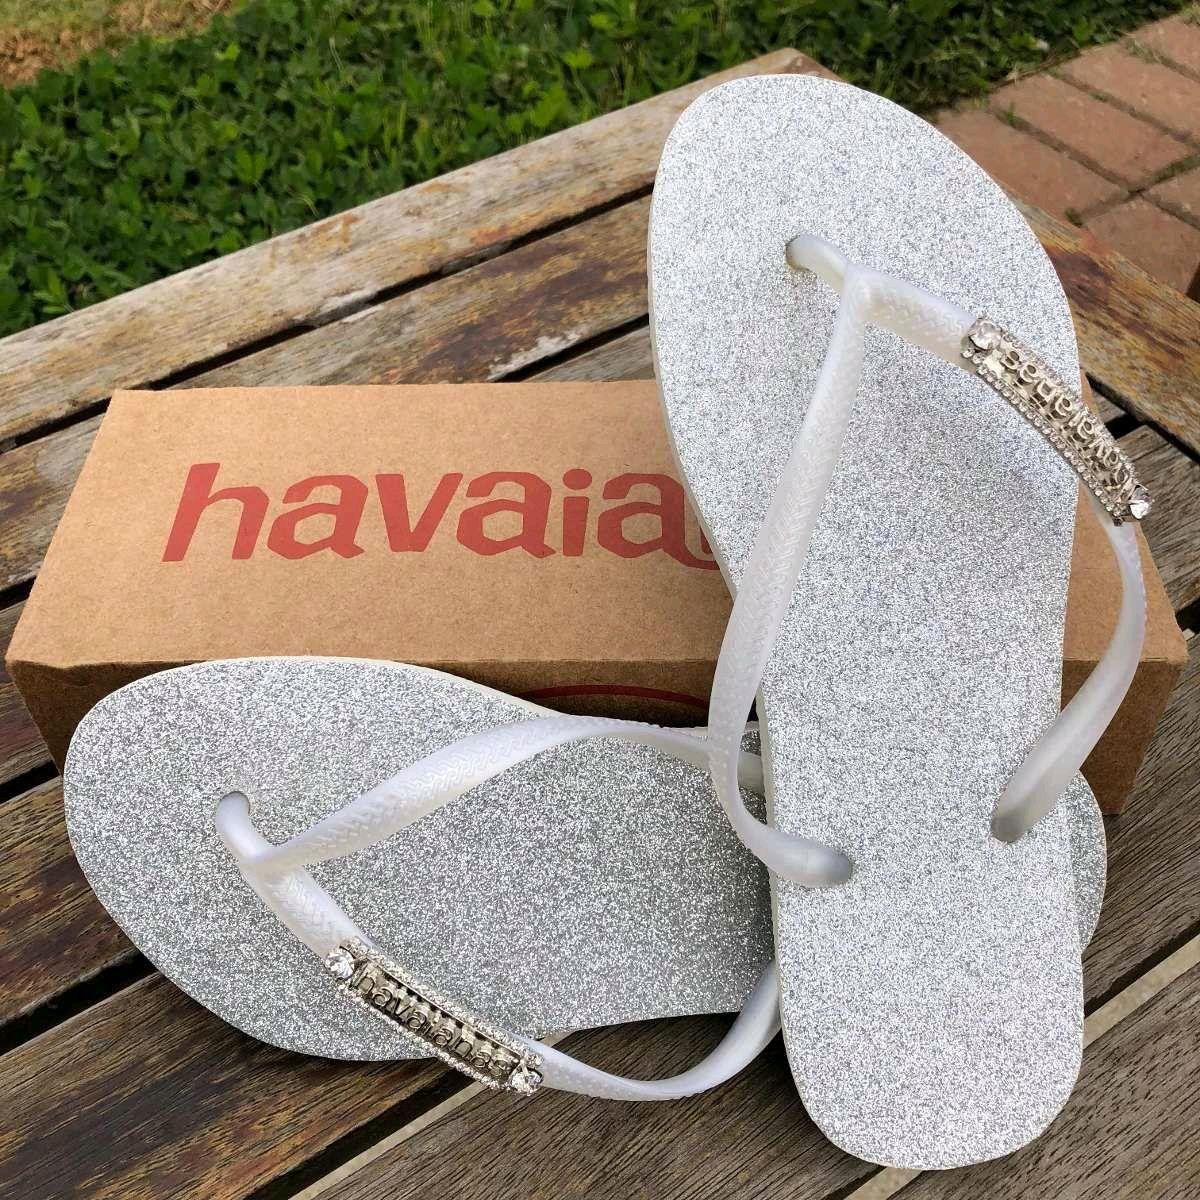 Havaianas a sandália brasileiríssima